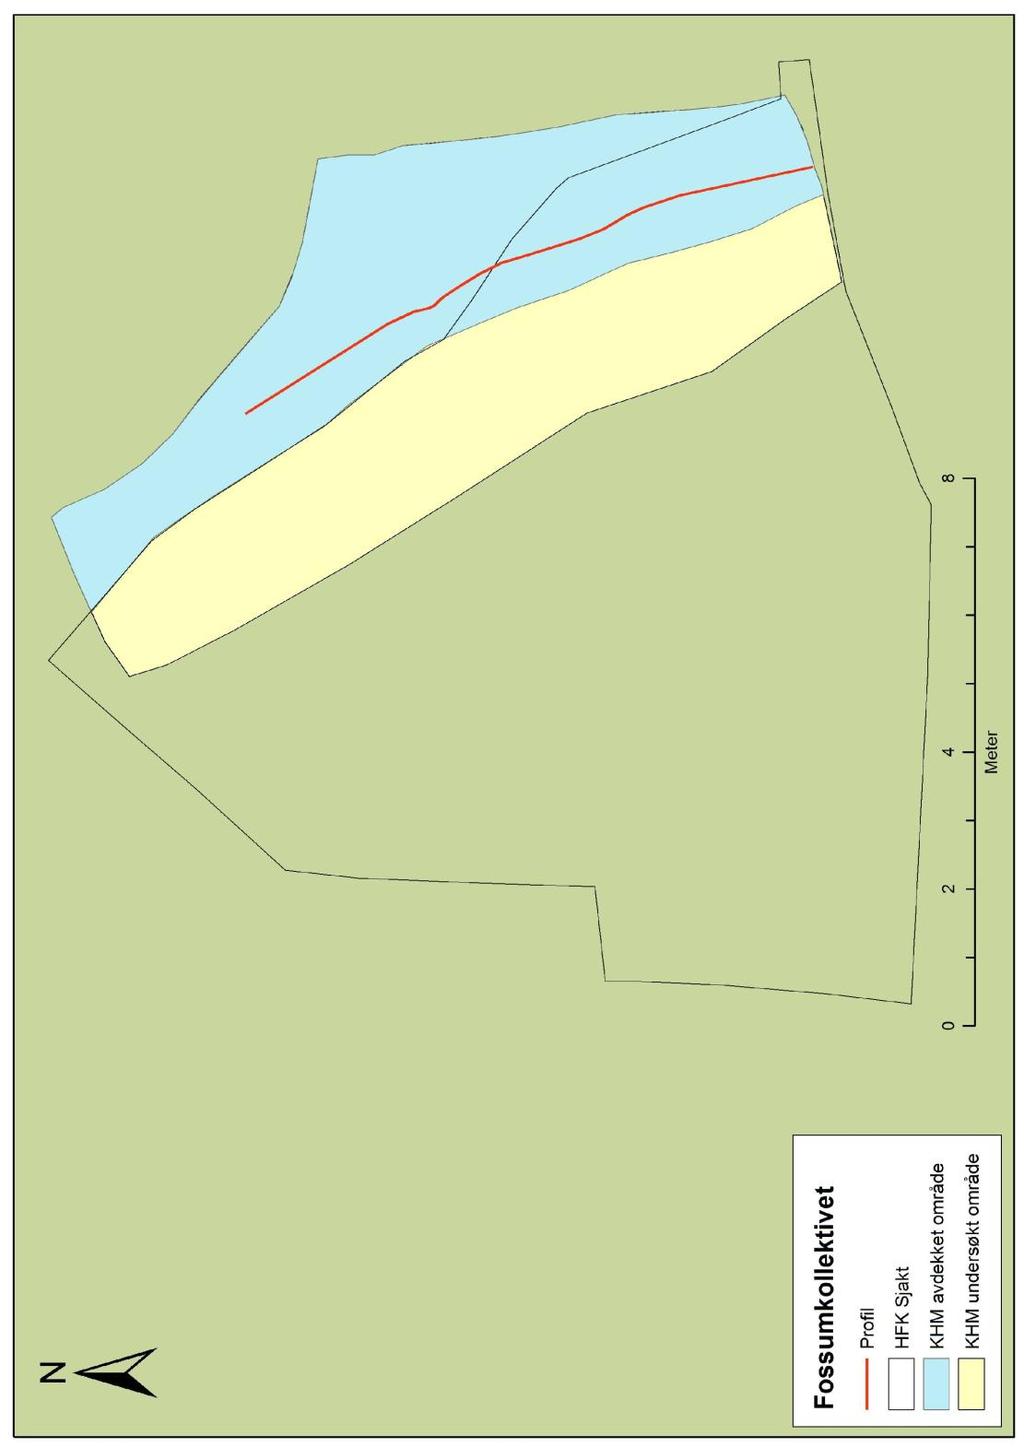 Figur 4: Registrering, utgravning og dokumentasjon av steinlag. Hedmark fylkeskommunes sjakt 1 markert med omriss; blått område representerer bevart bryggesteinslag mm.